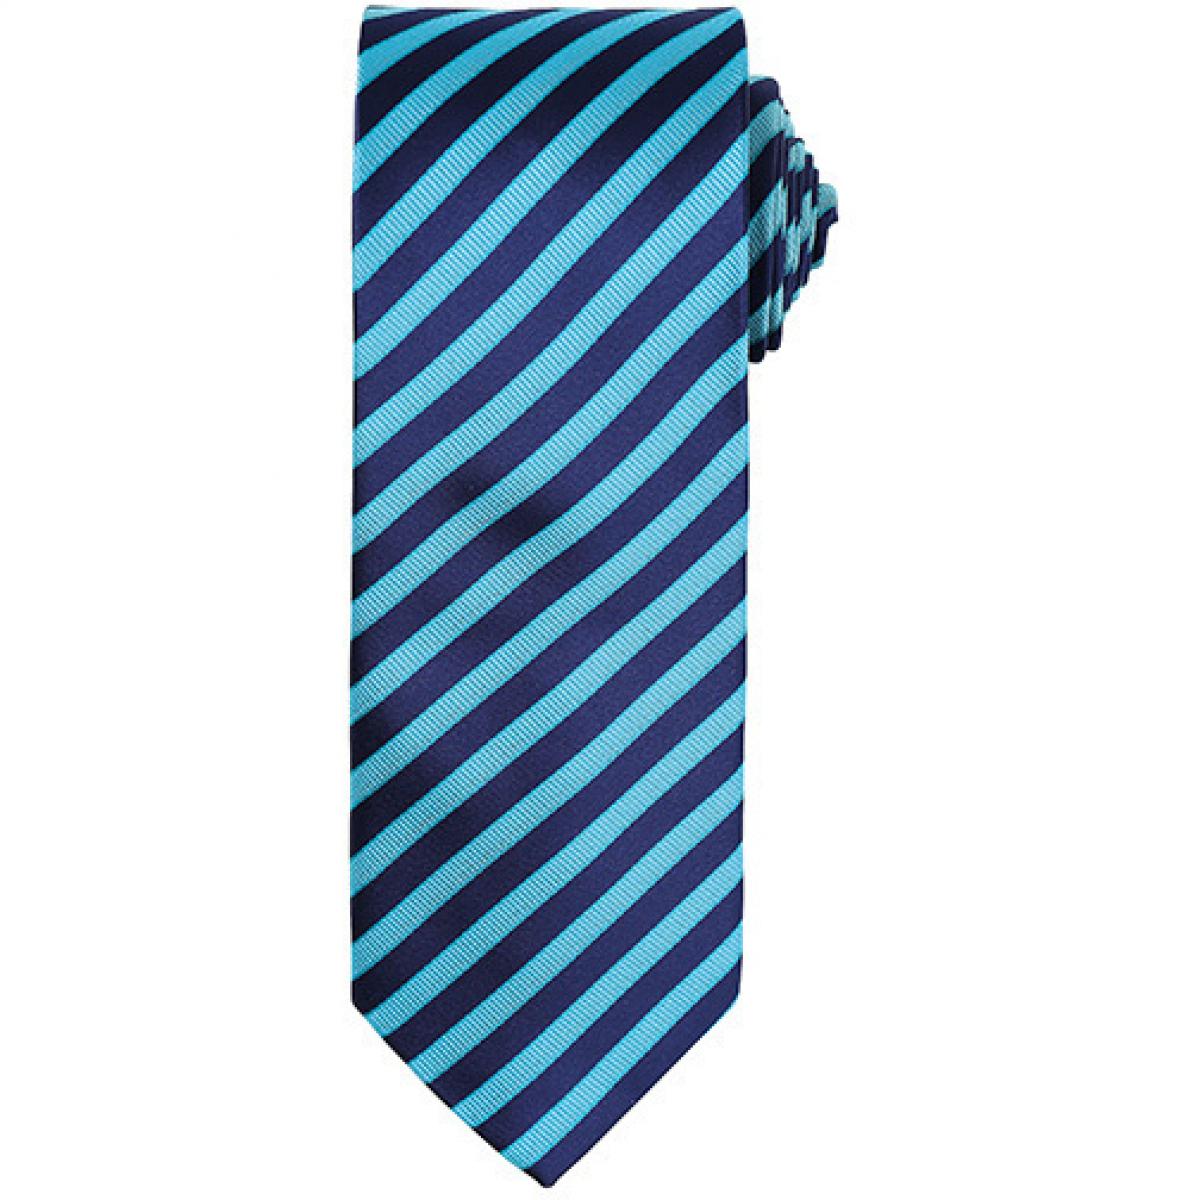 Hersteller: Premier Workwear Herstellernummer: PR782 Artikelbezeichnung: Double Stripe Tie / Breite 3" / 7,5 cm / Länge 57" / 144 cm Farbe: Turquoise/Navy